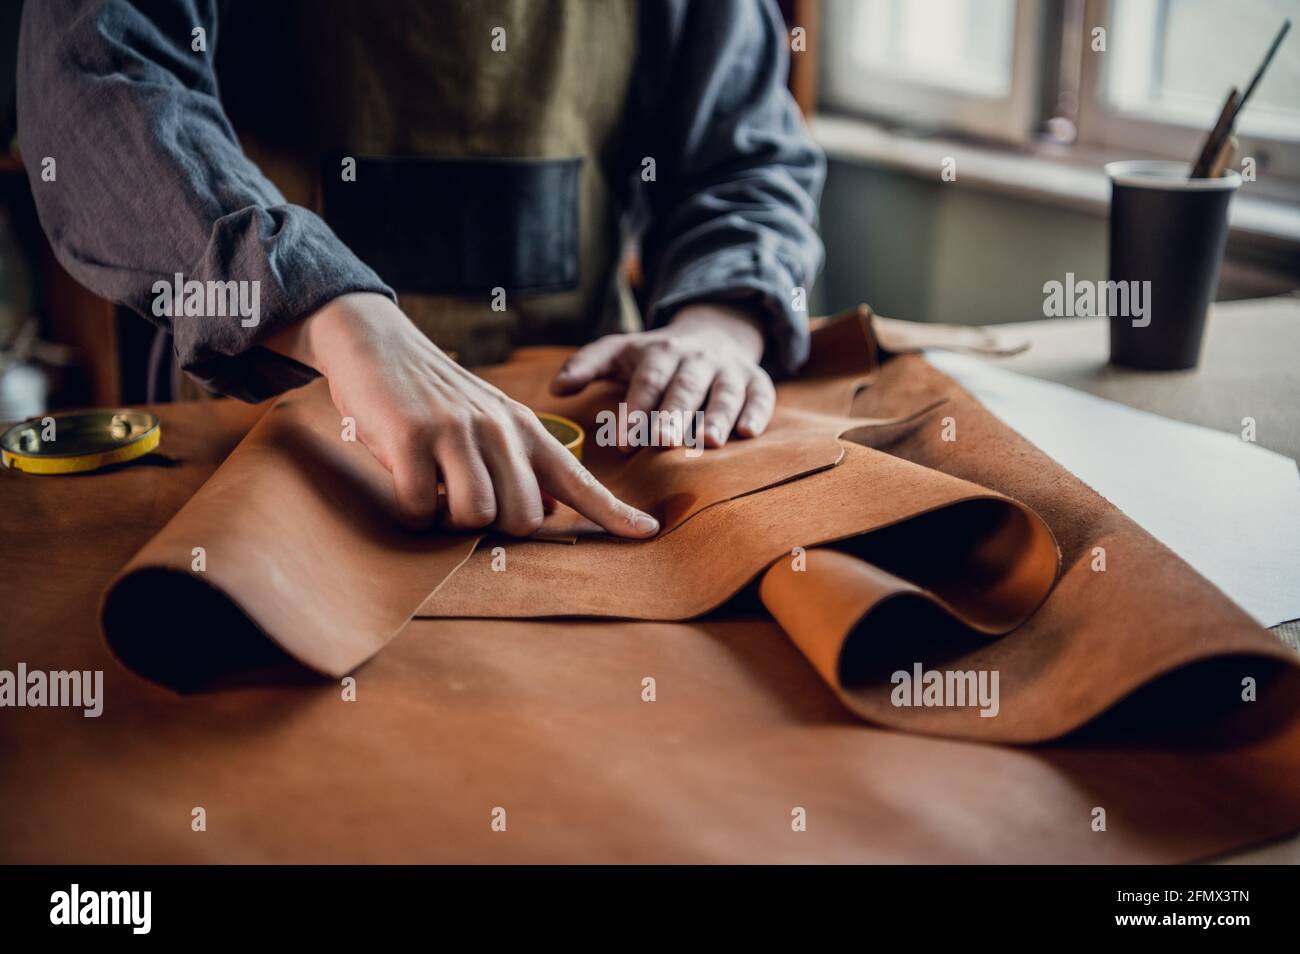 La etapa inicial de producción de zapatos de cuero, un joven pone el cuero  en la mesa para su uso posterior Fotografía de stock - Alamy